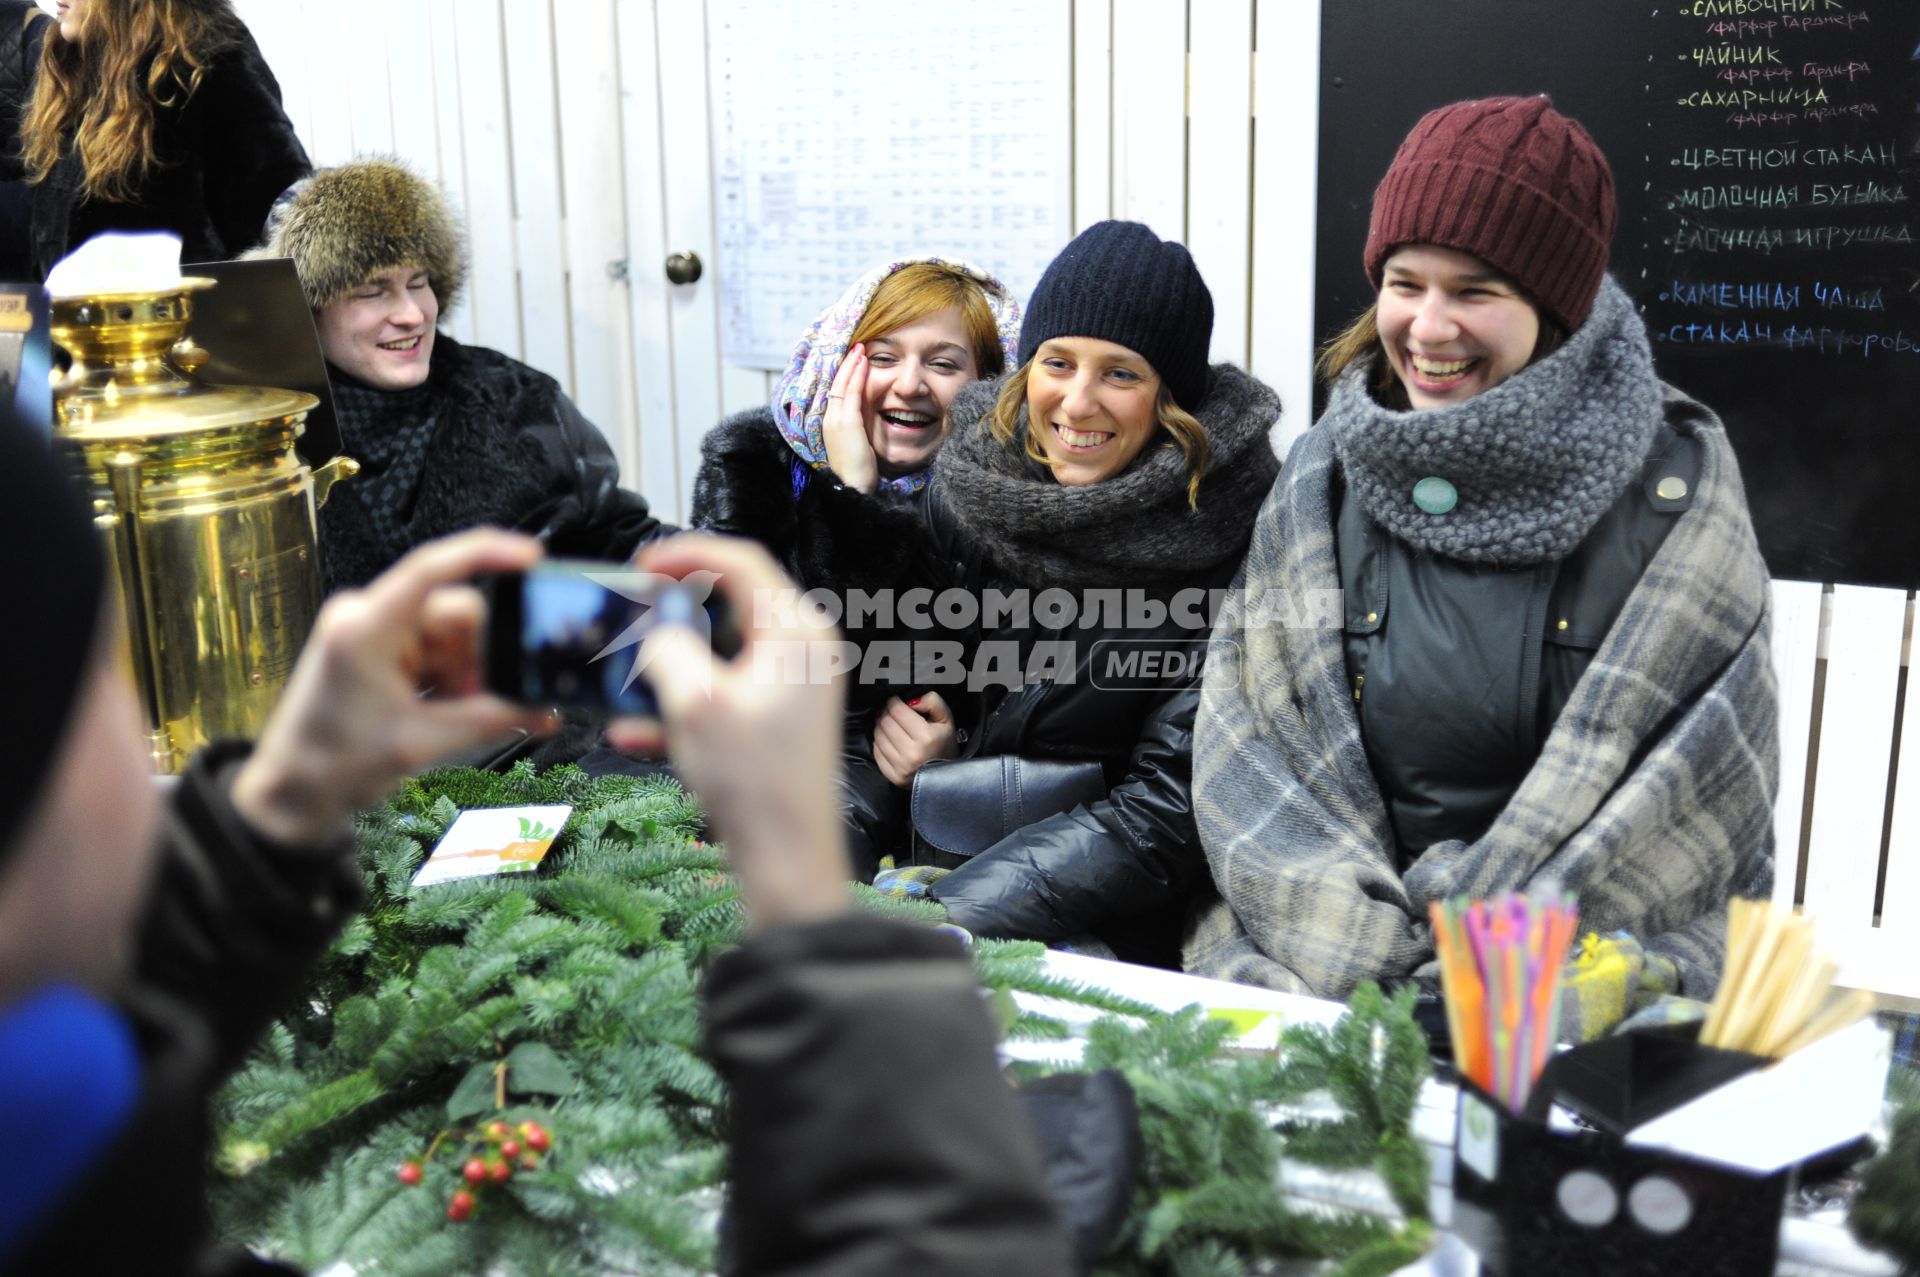 Станция `Теплое место` открылась в Столешниковом переулке. На снимке: девушки фотографируются за столом.